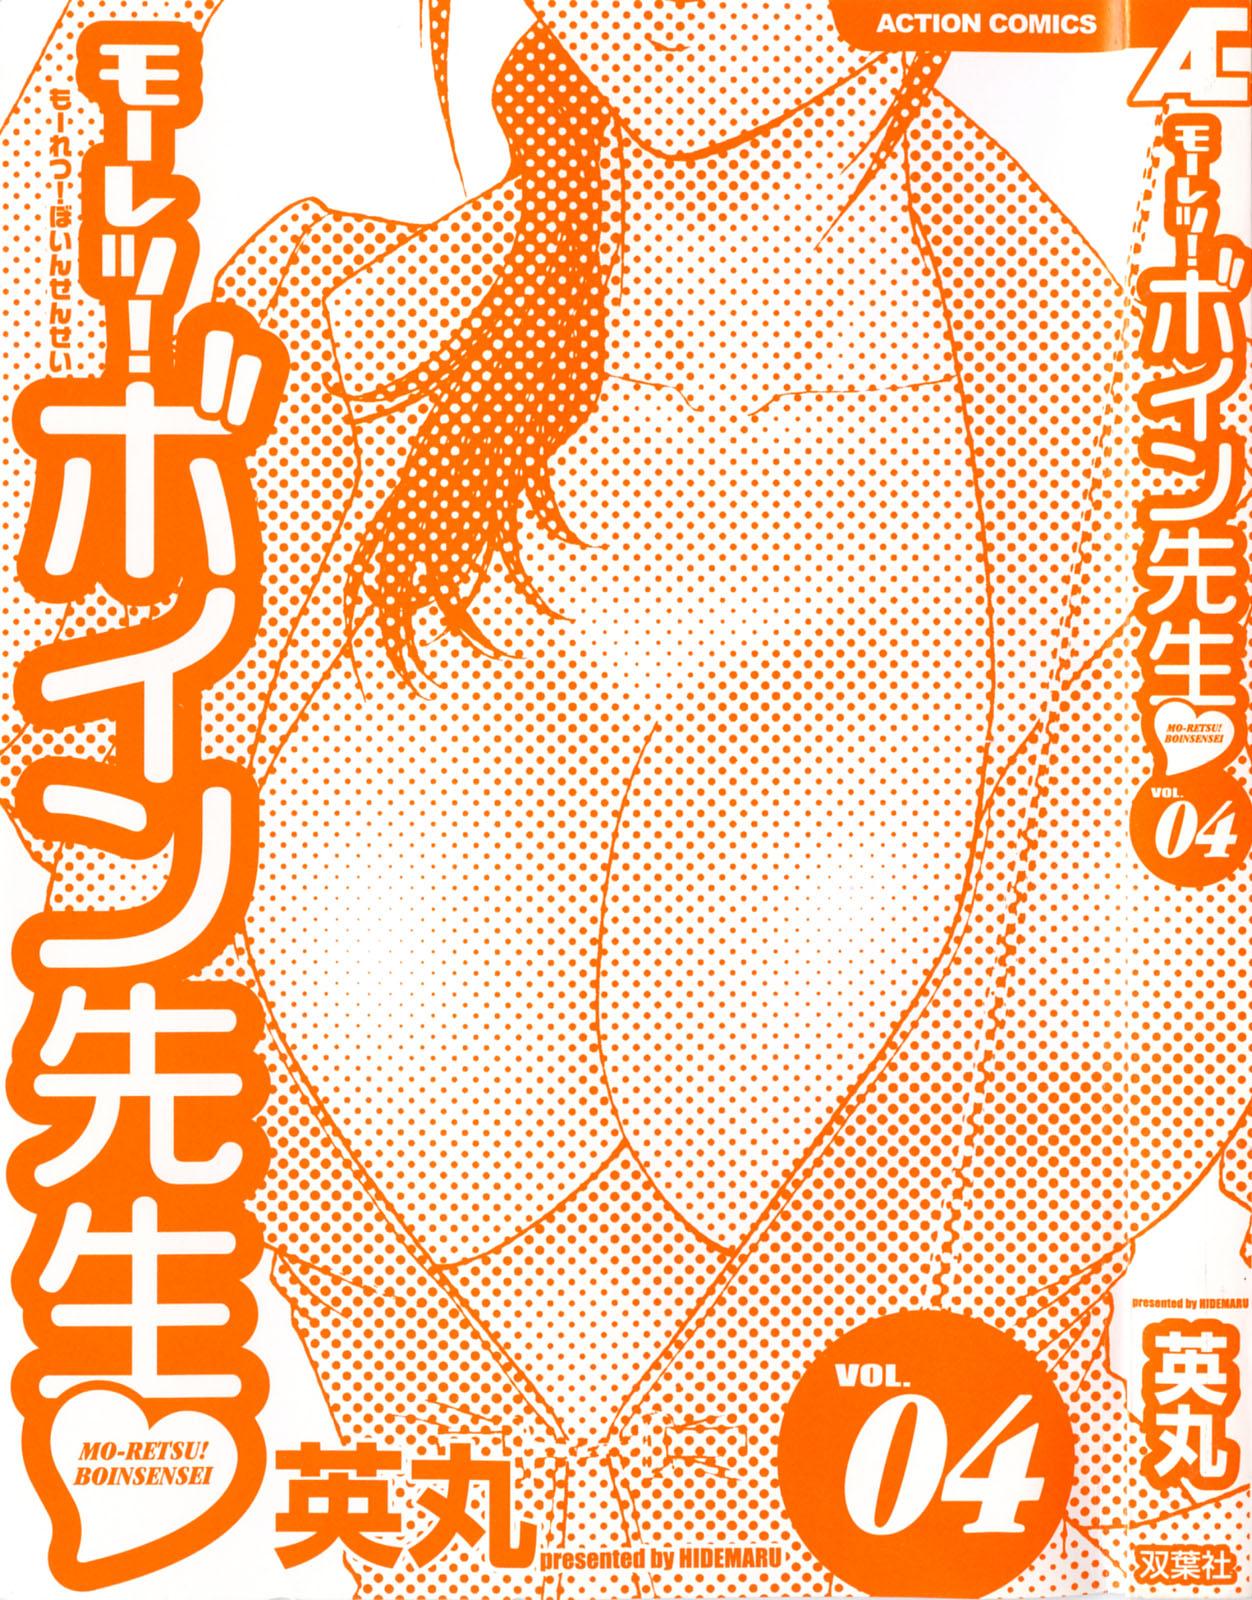 [Hidemaru] Mo-Retsu! Boin Sensei (Boing Boing Teacher) Vol.4 2